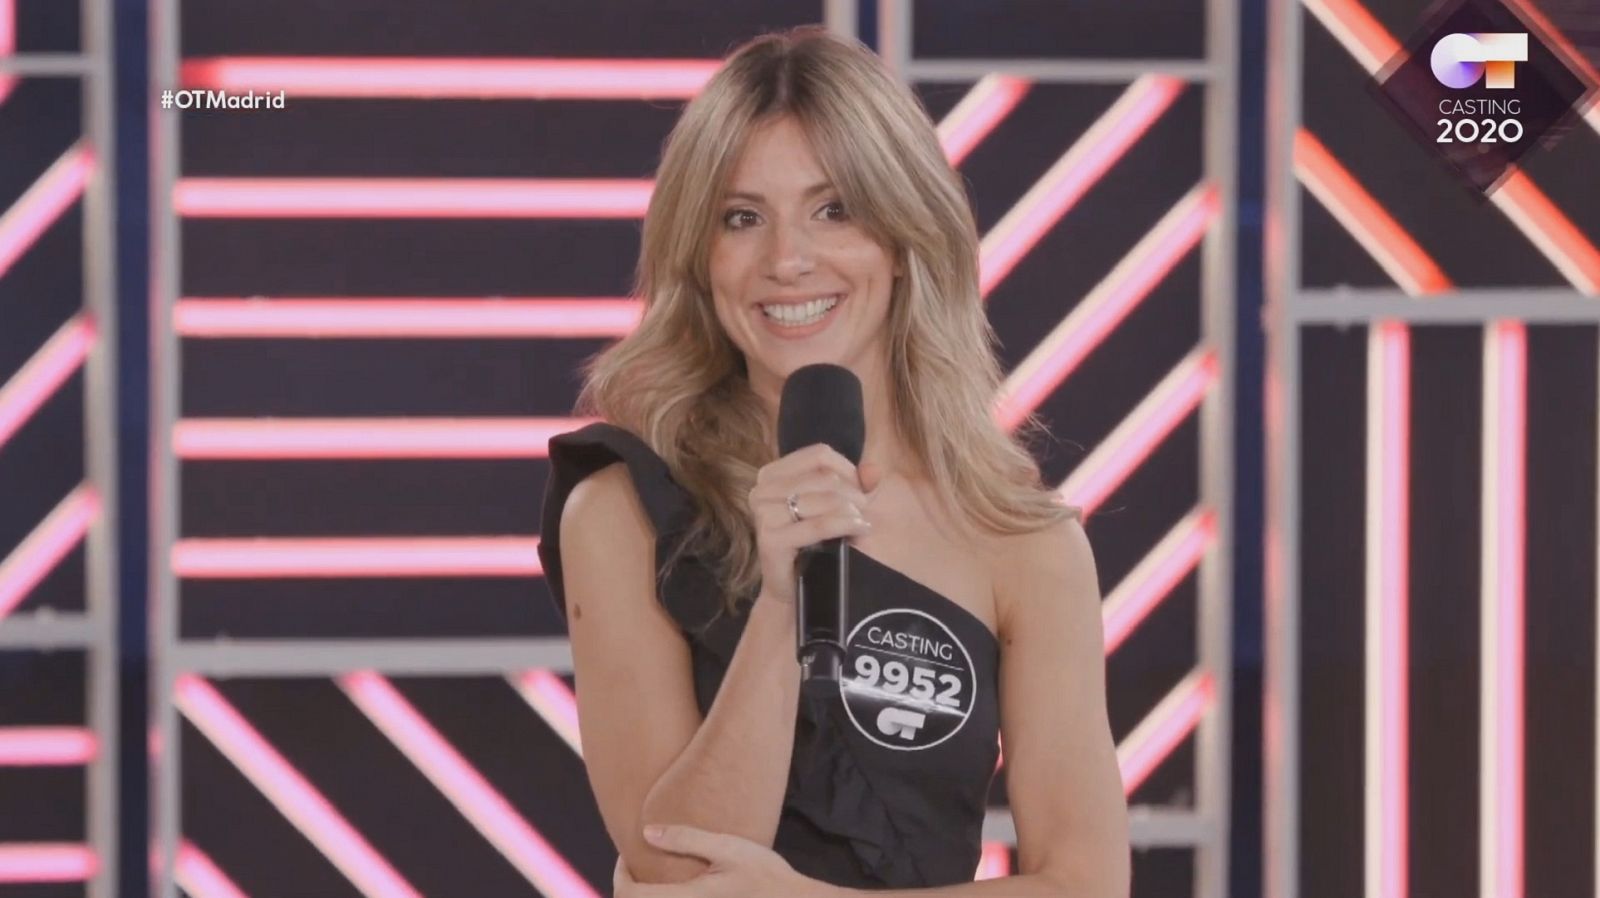 Nadia ha cantado "Born this way" en la Fase 2 del casting OT 2020 en Madrid